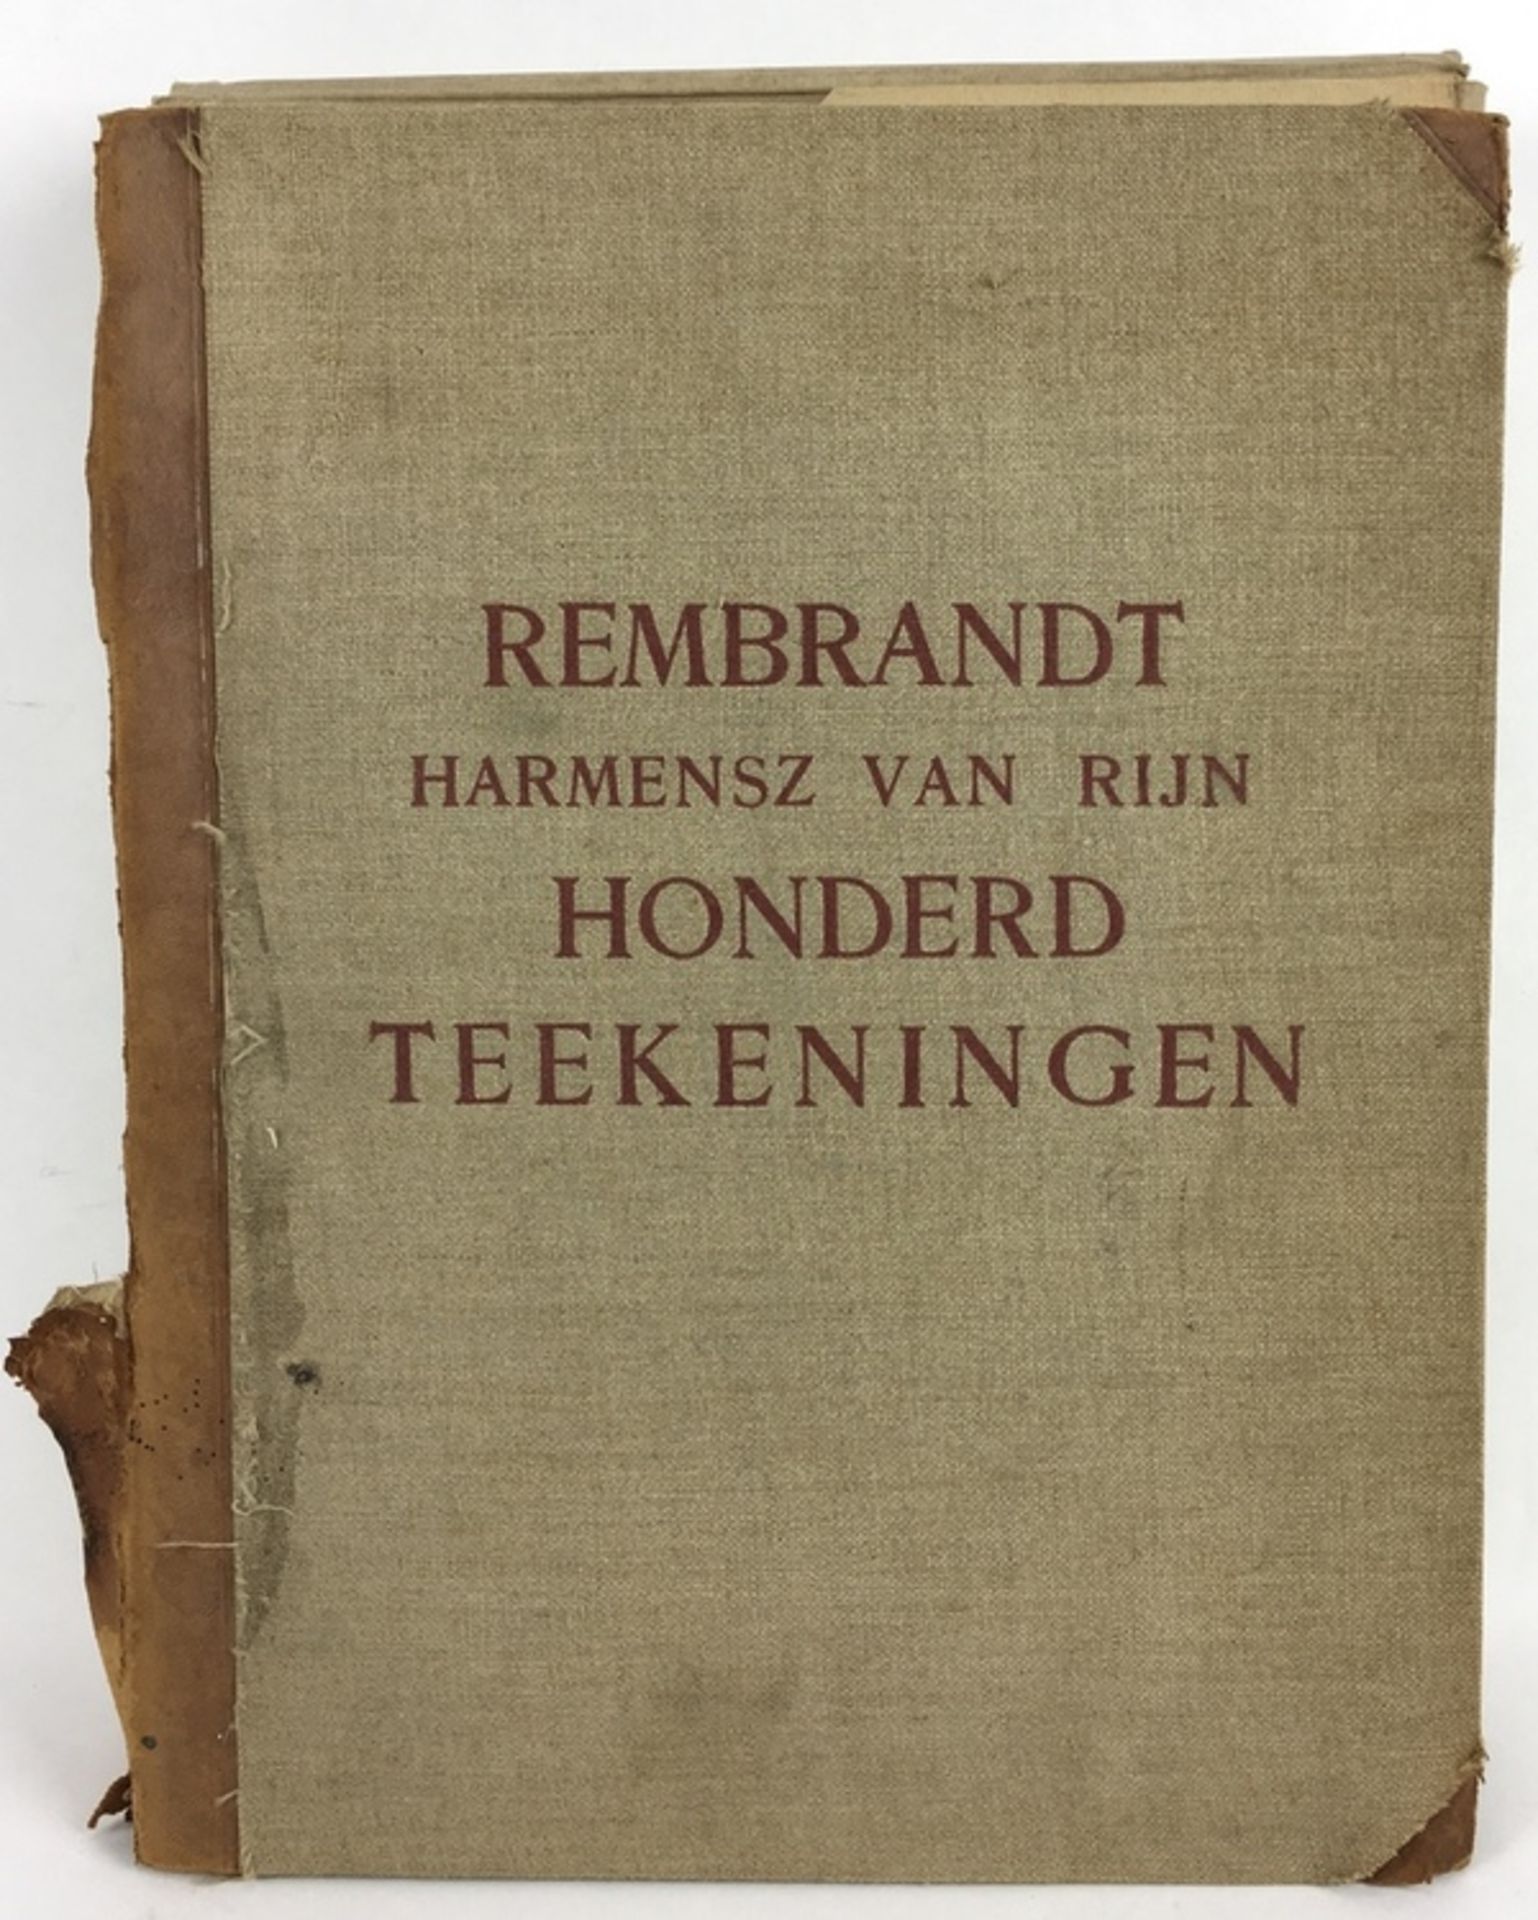 (Kunst) Rembrandt, 100 tekeningenRembrandt Harmensz van Rijn Honderd Teekeningen. N.V. Focus Bl